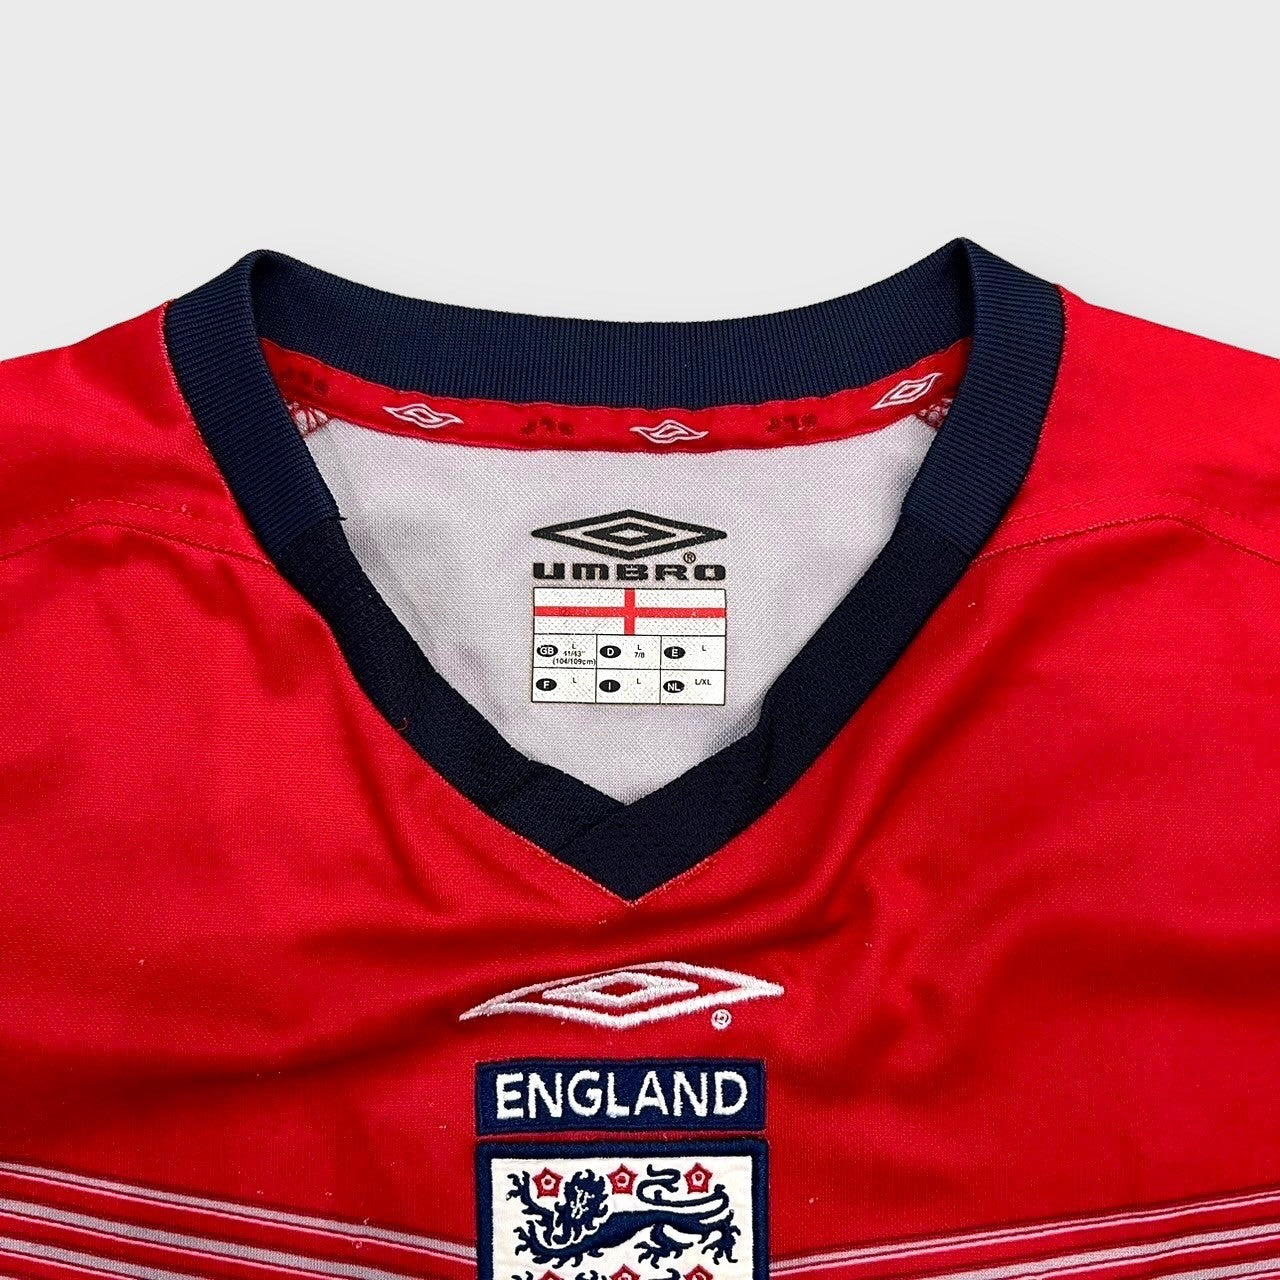 00's "UMBRO"
"ENGLAND" team shirt